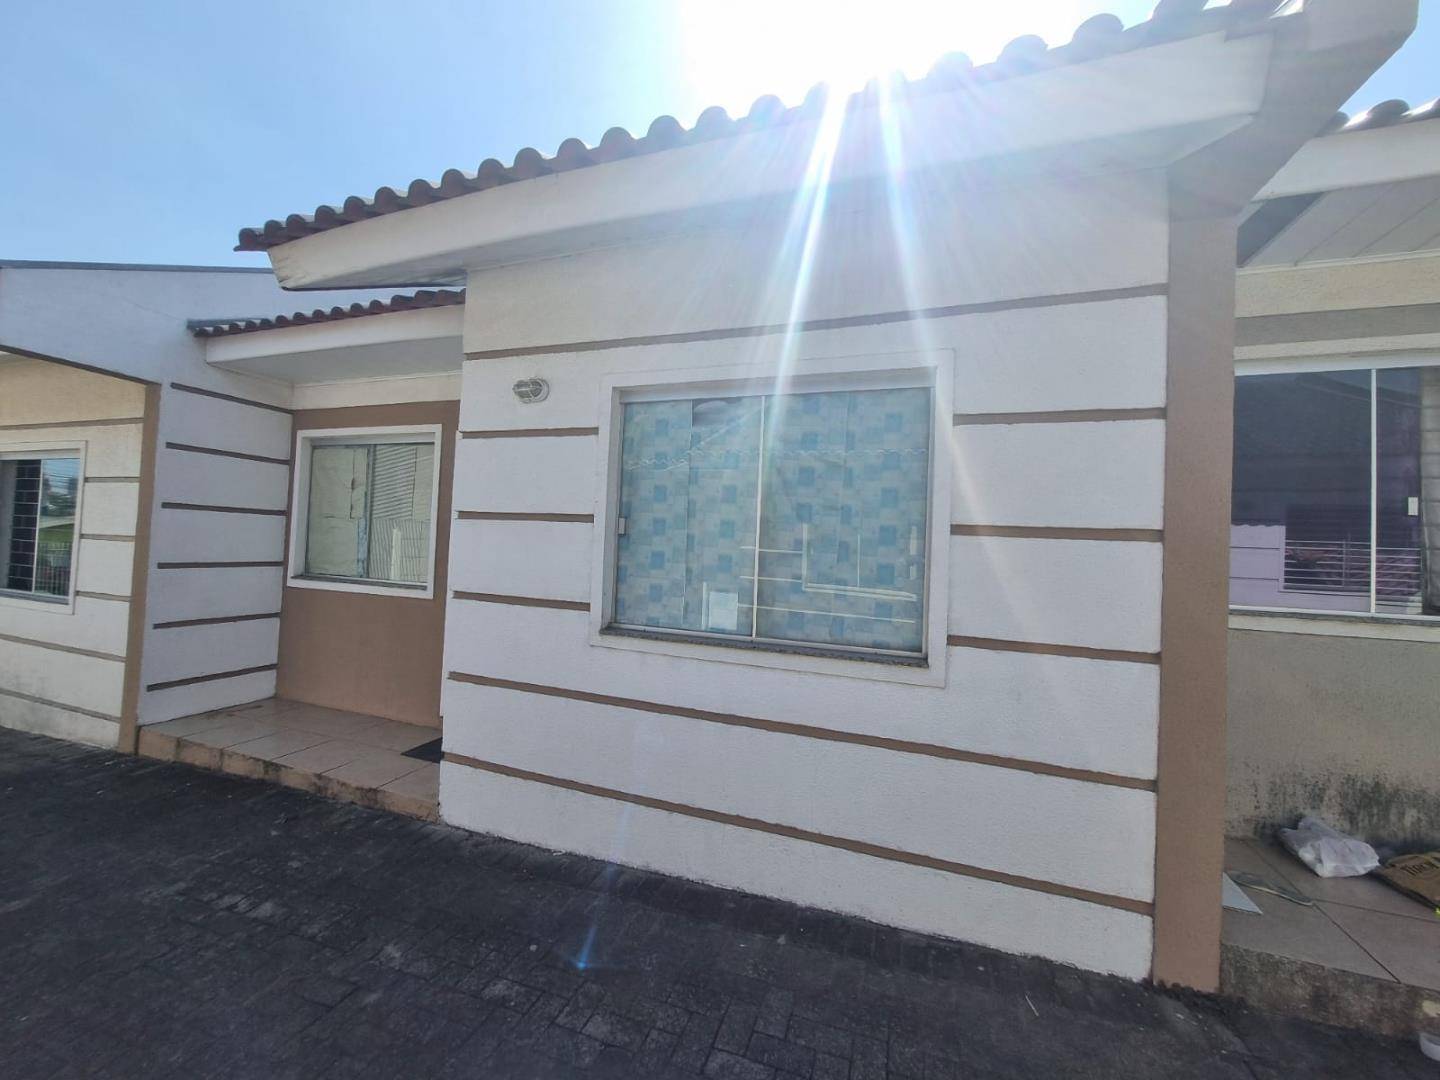 Casa para vendalocacaovenda e locacao no Boa Vista em Ponta Grossa com 48,84m² por R$ 199.900,00900,00